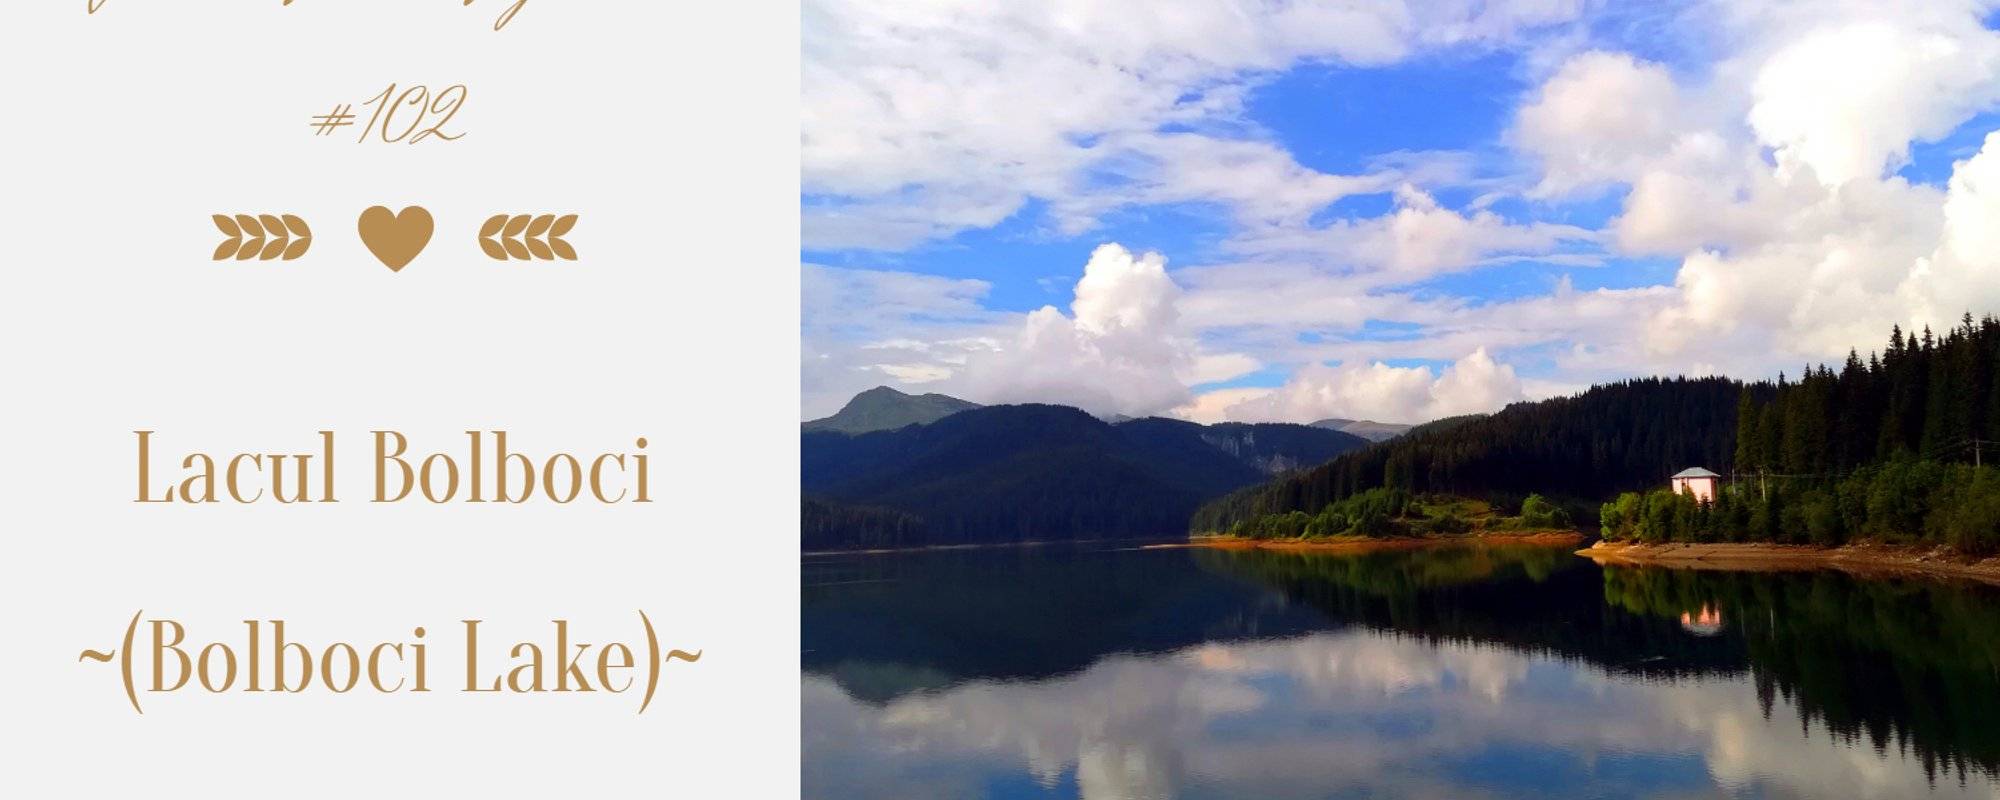 Let's travel together #102 - Lacul Bolboci (Bolboci Lake)